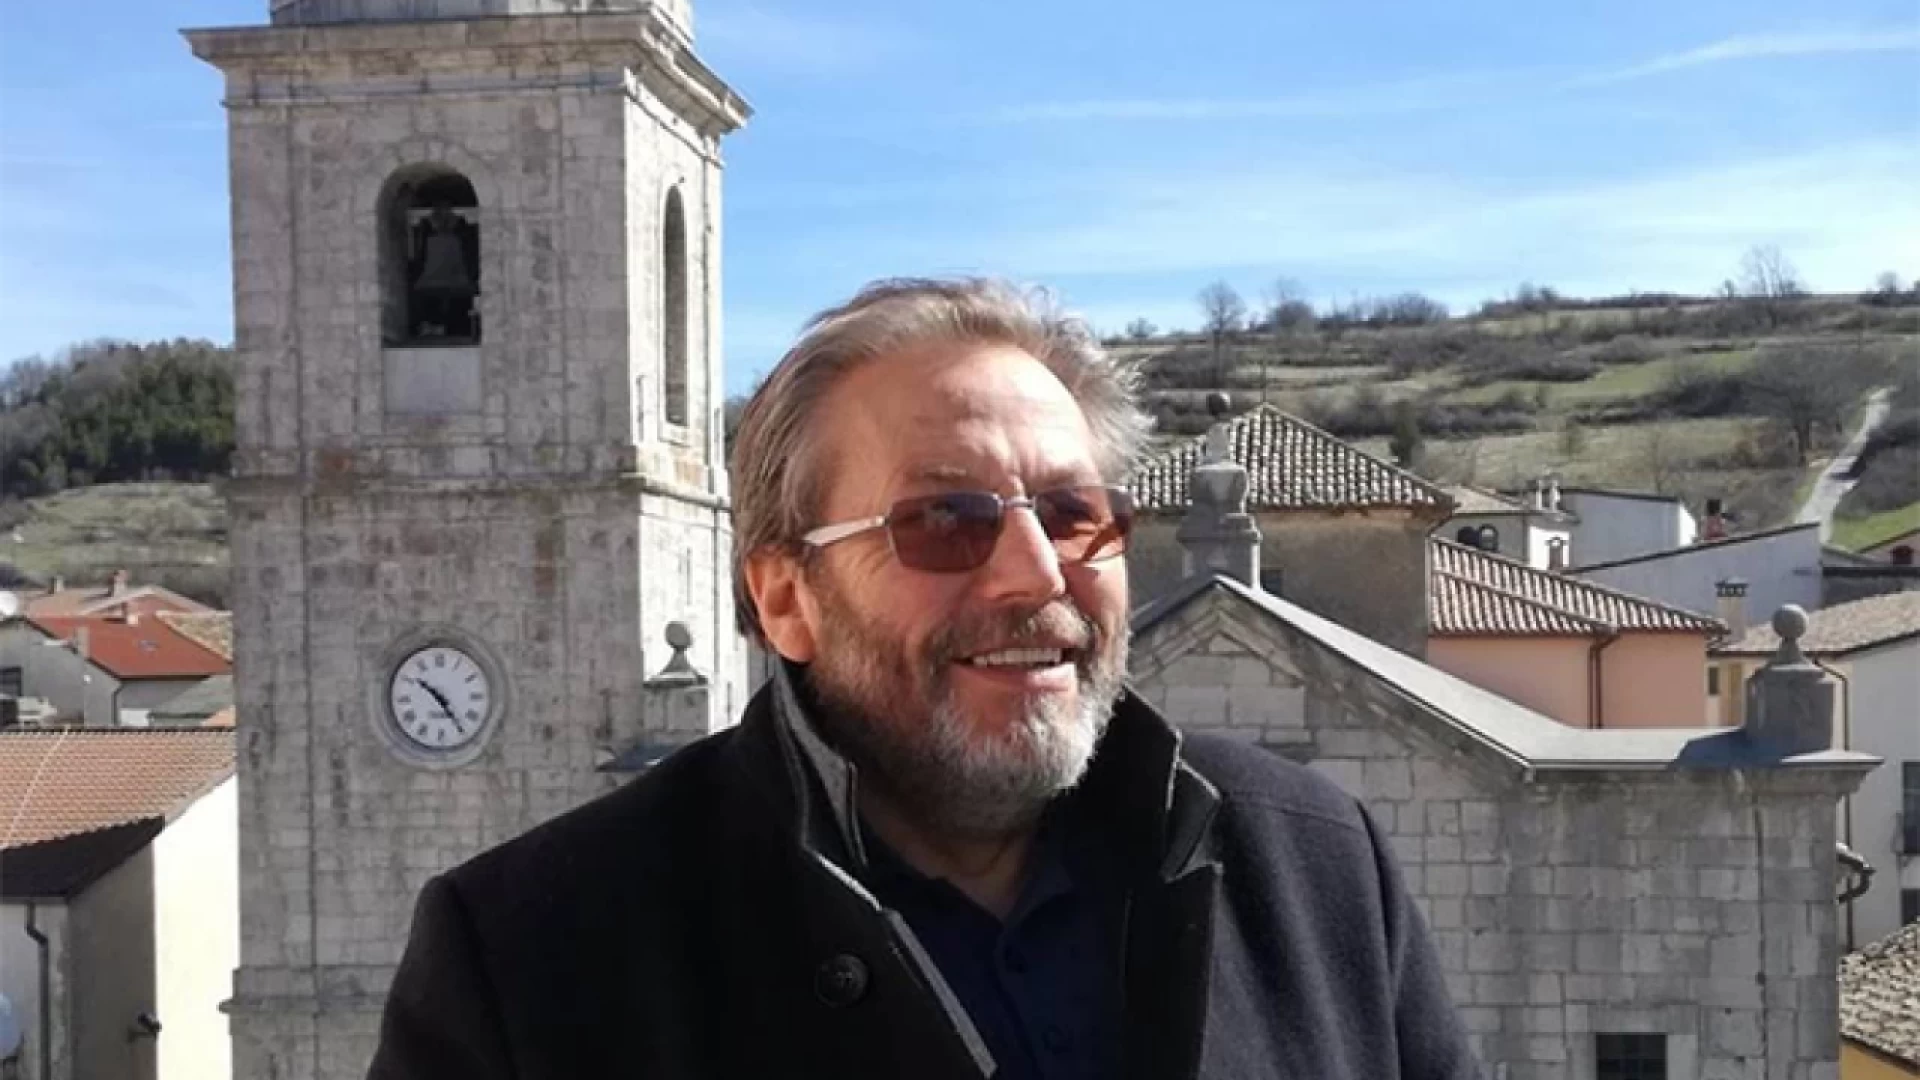 Rionero Sannitico: Tonino Minichiello candidato alla carica di sindaco con la lista “Insieme e’ possibile”. Presentata la squadra elettorale.